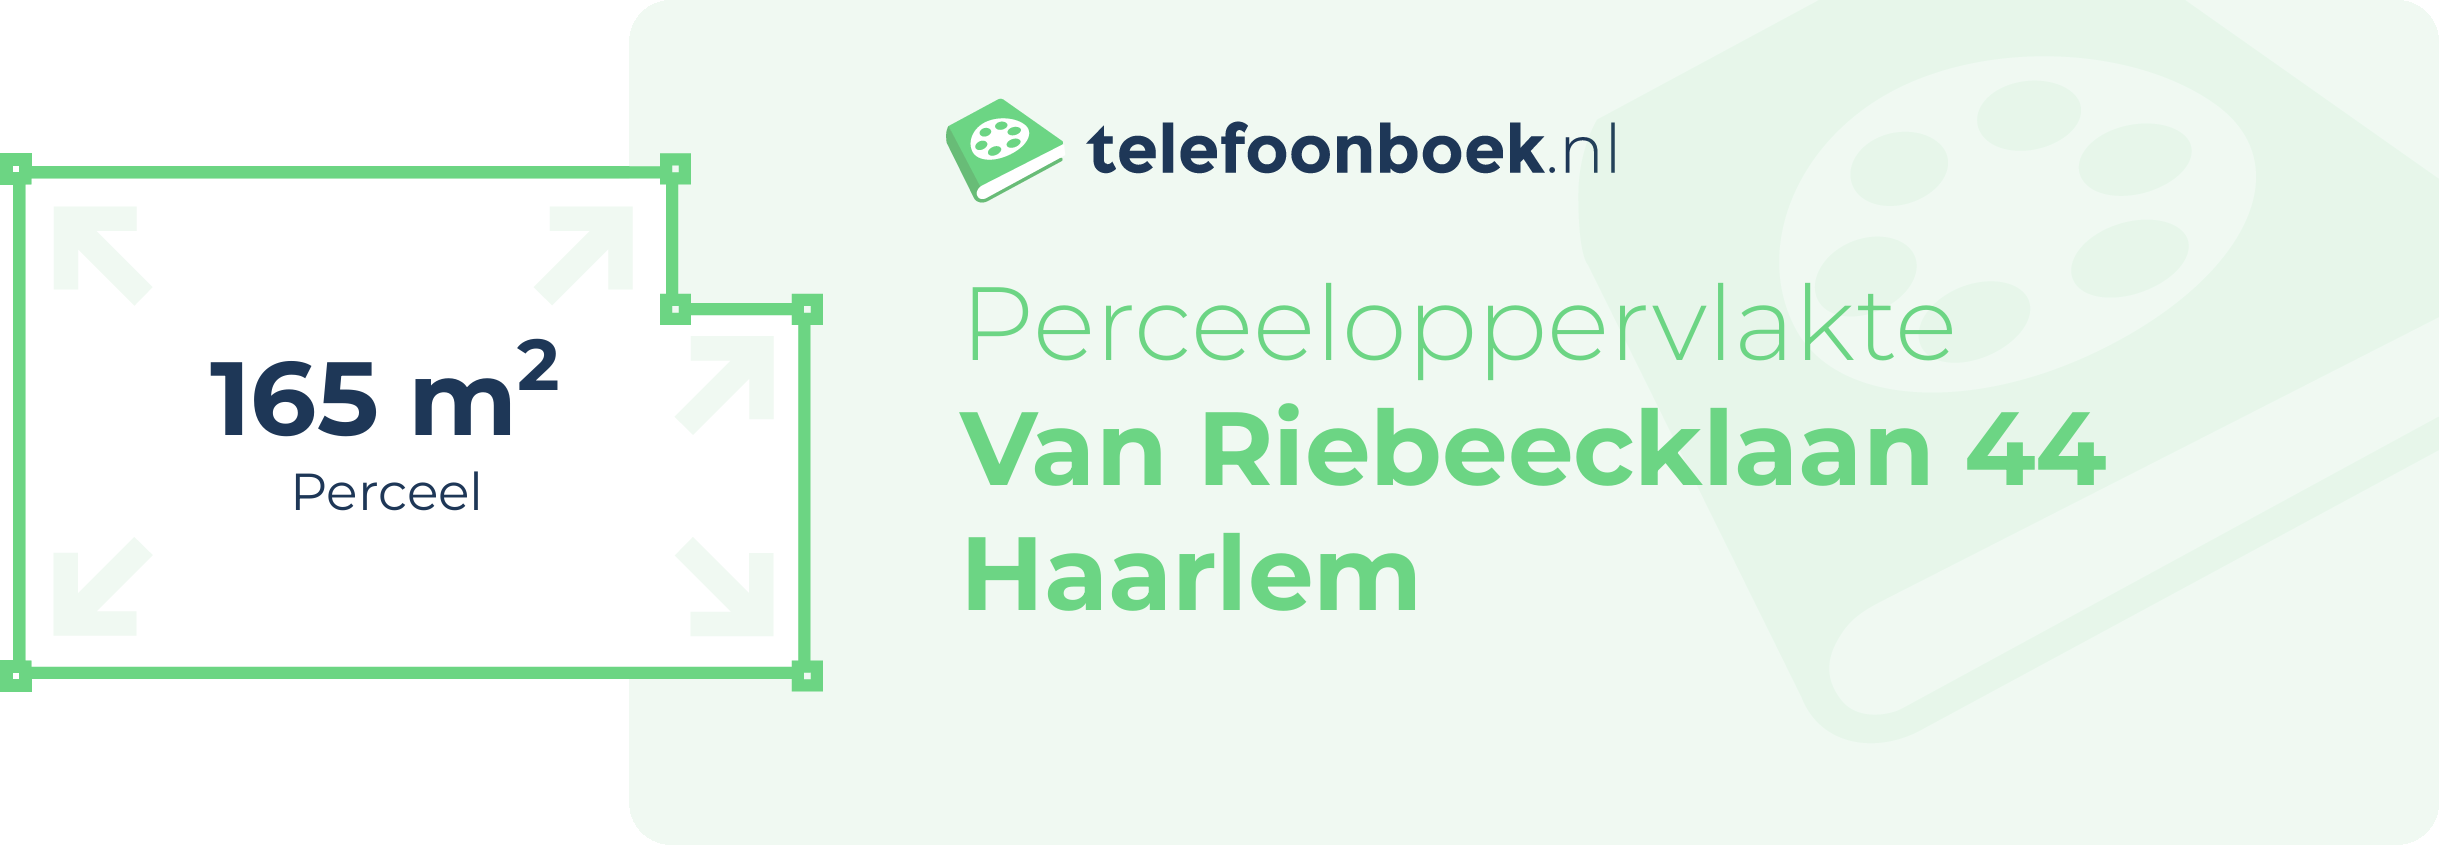 Perceeloppervlakte Van Riebeecklaan 44 Haarlem